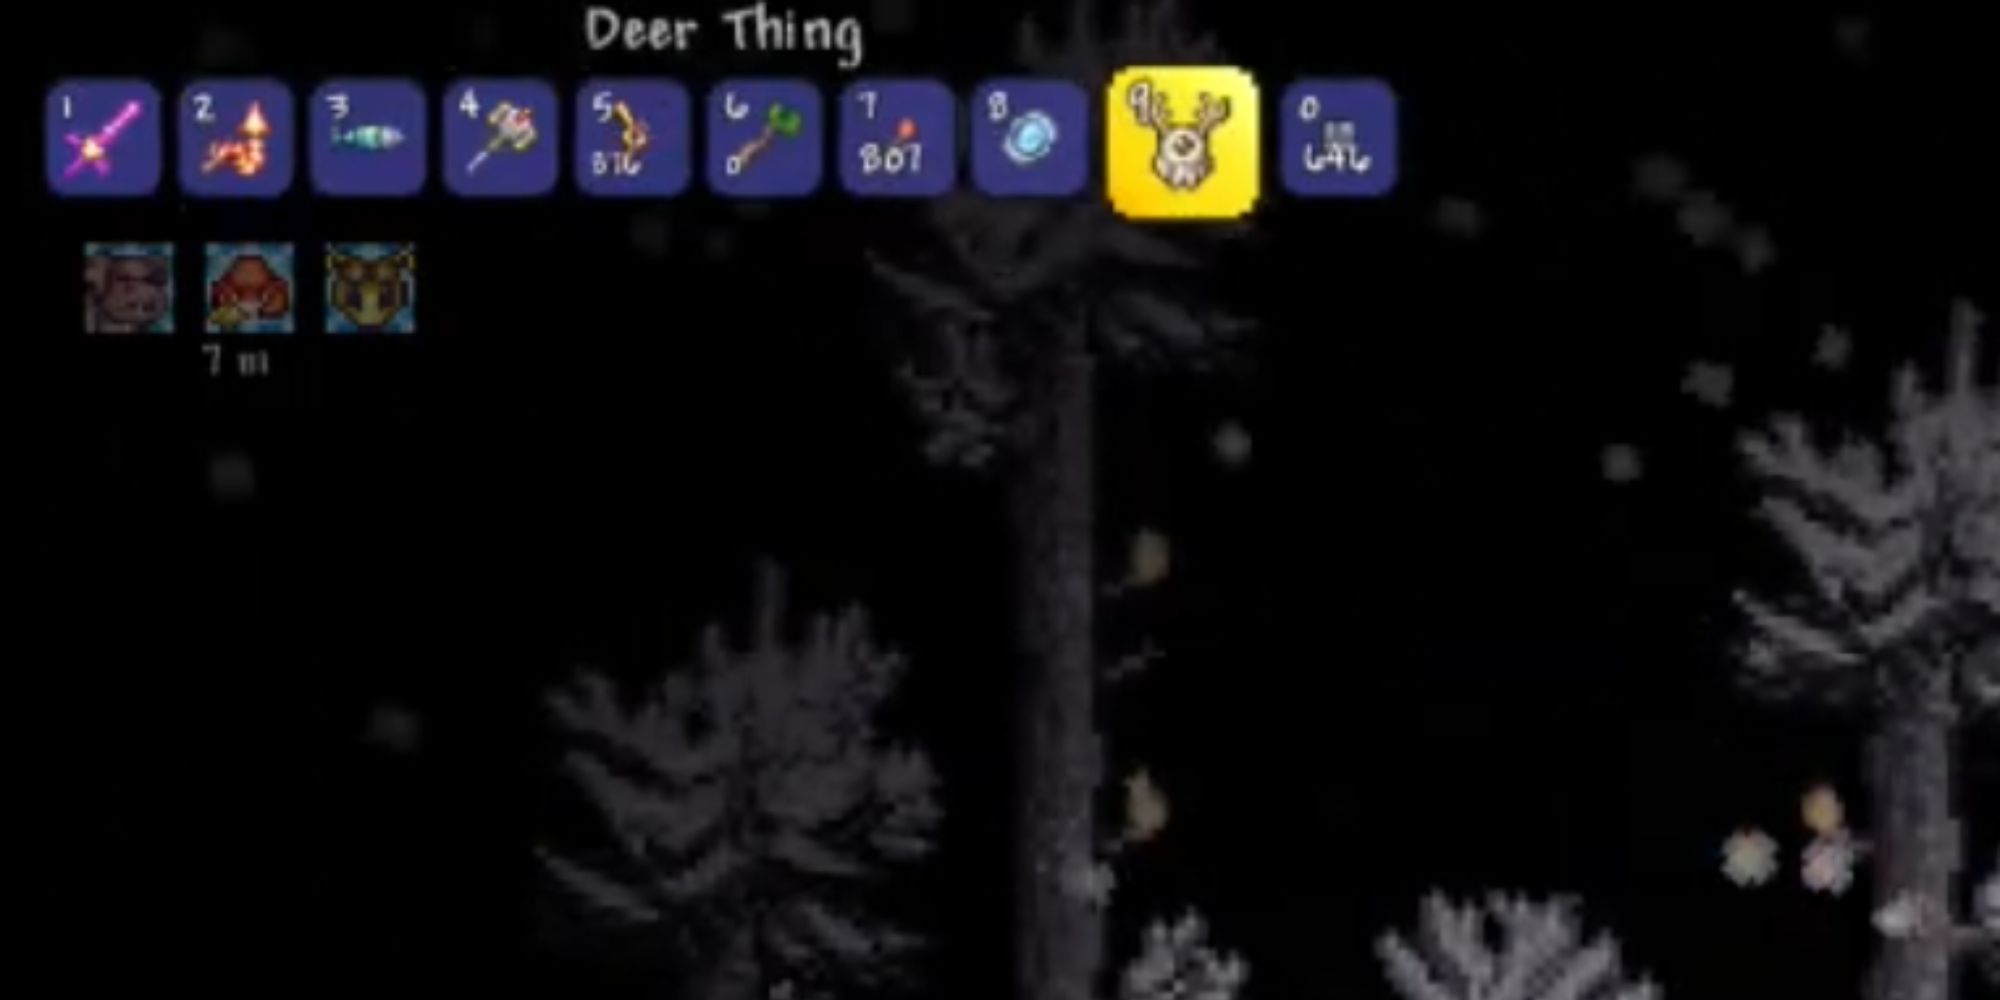 terraria_deer_thing_item_inside_inventory